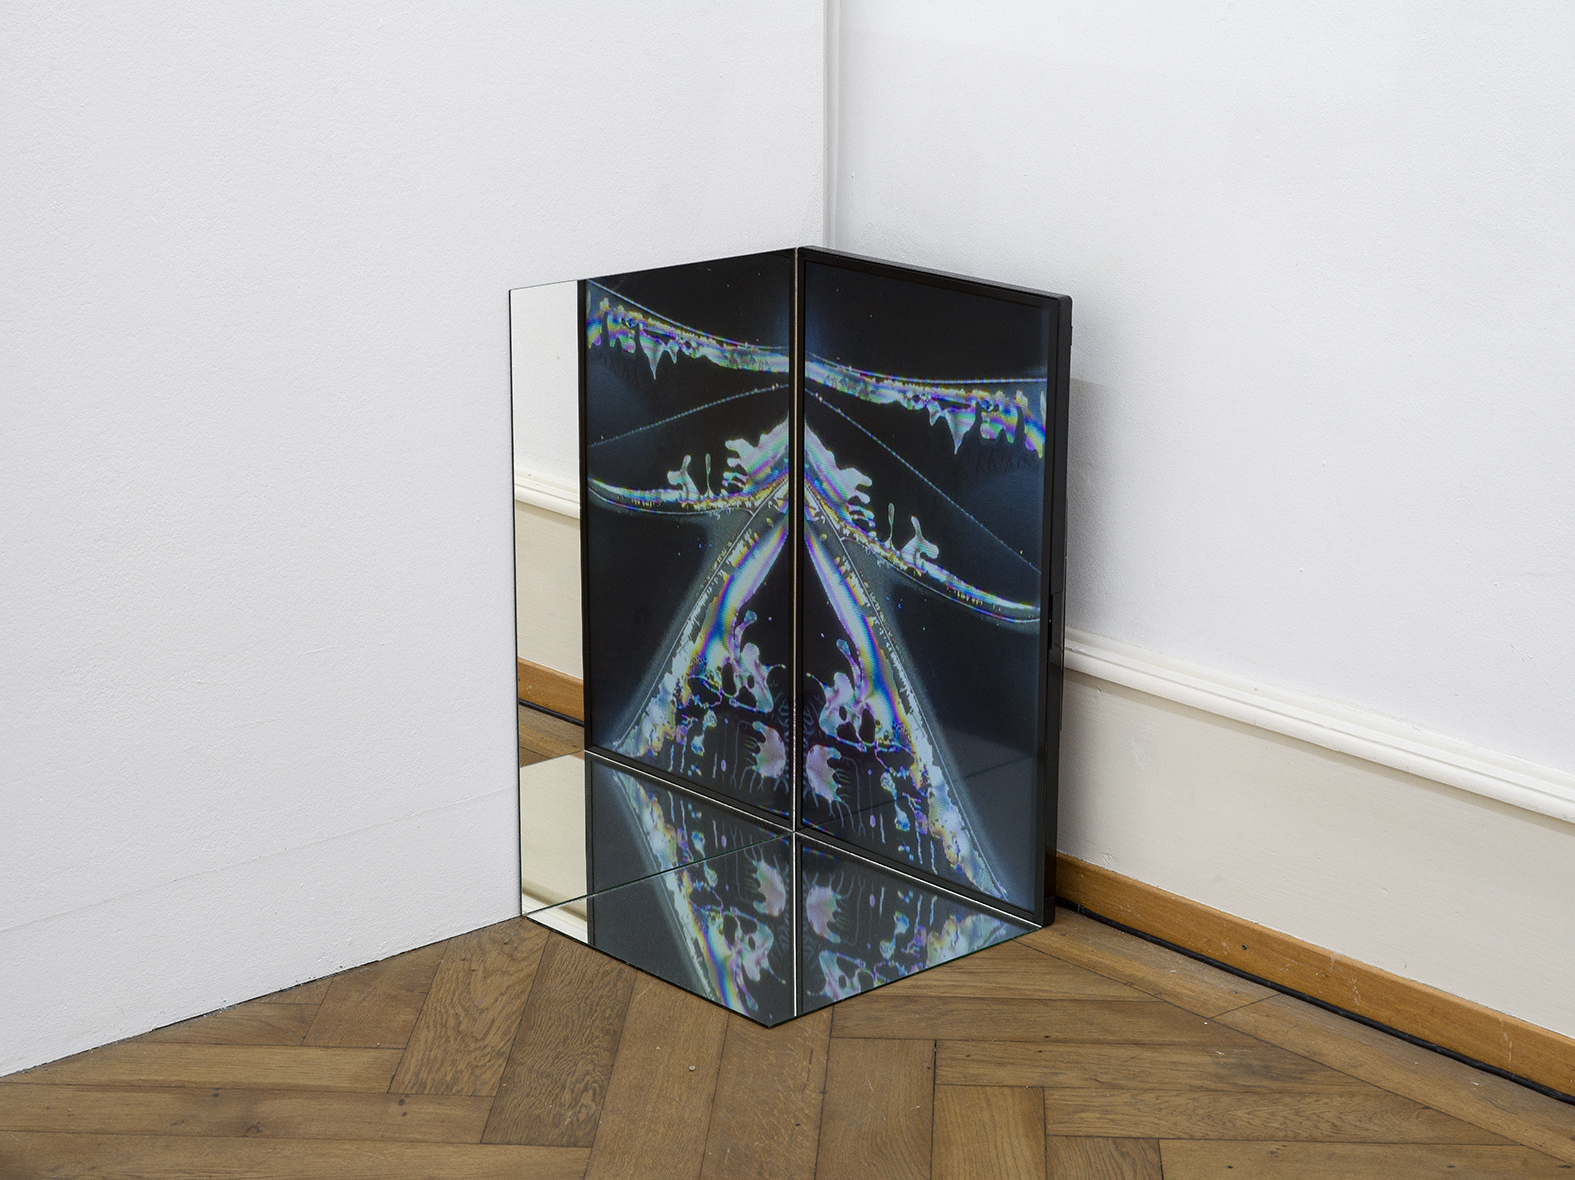 Thalles Piaget, Gleichzeitig zwei Zeiten, 2023, Exhibition View “Of Bodies in Digital Life”, Kunsthaus Langenthal, 2024. Photo: Cedric Mussano, Courtesy of the artist.